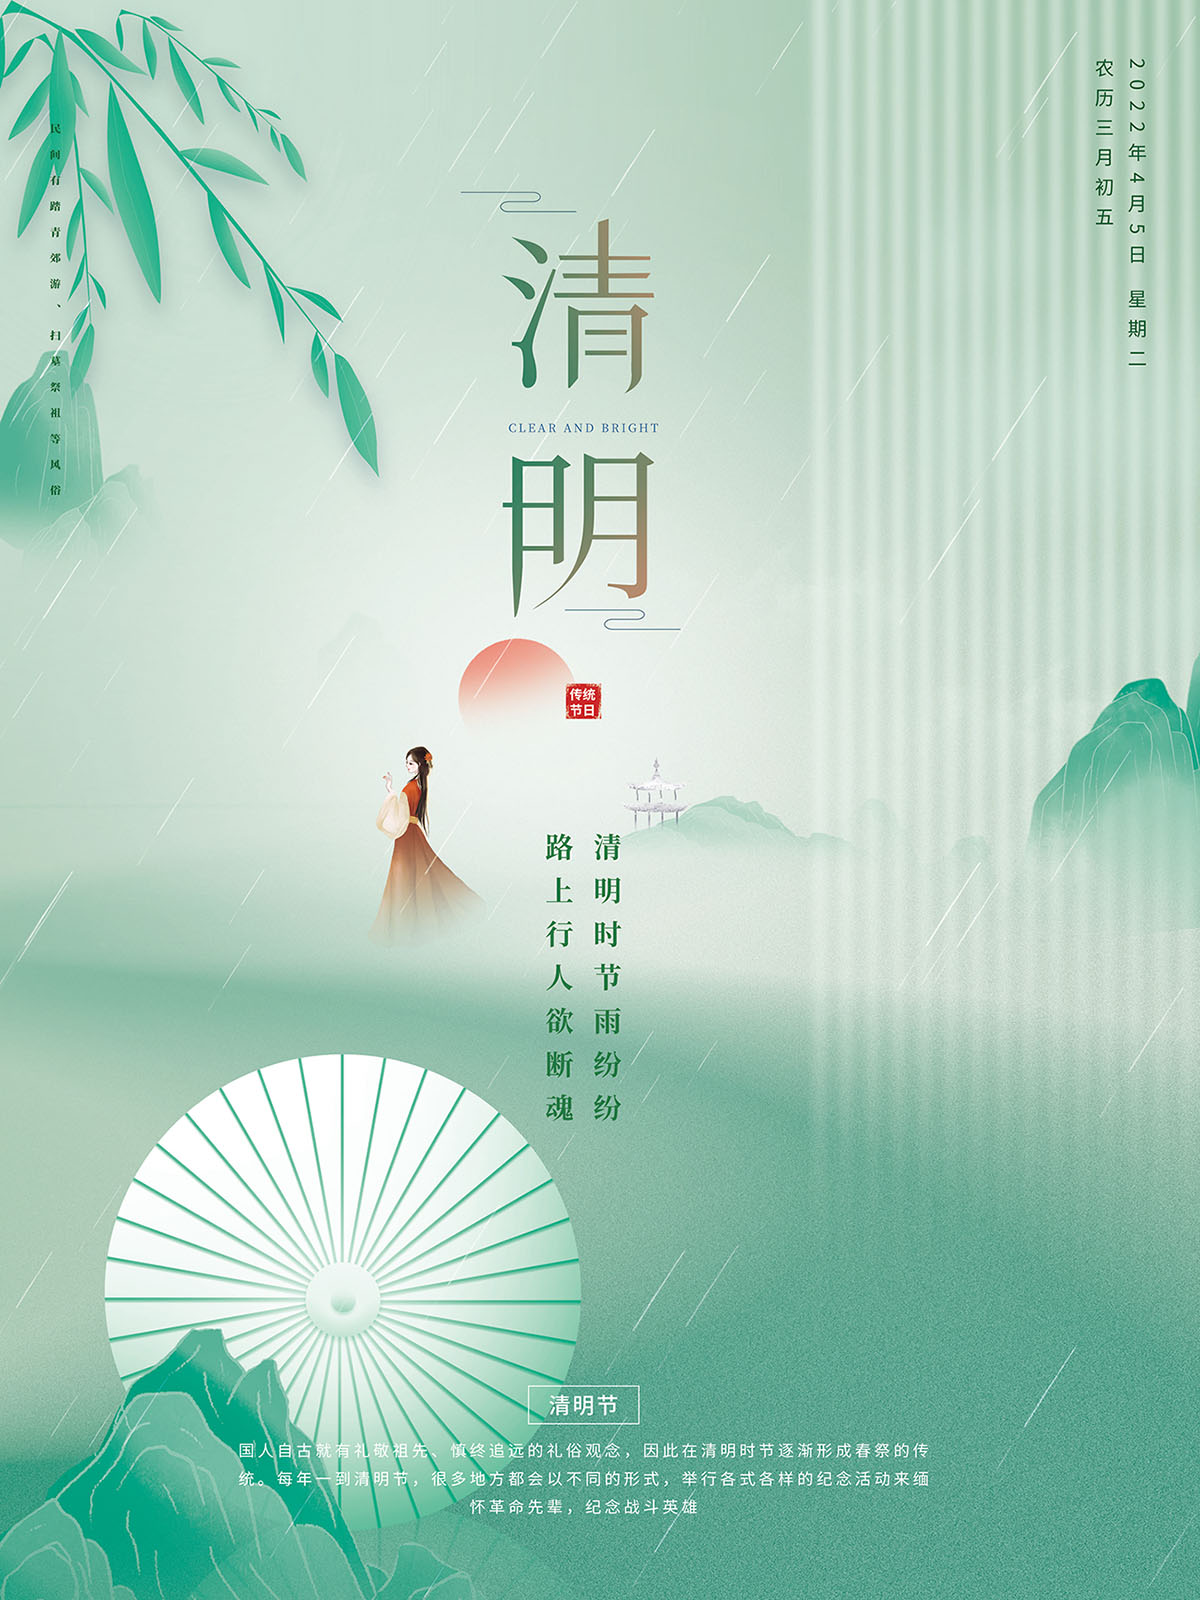 杨柳中国风清明节海报设计